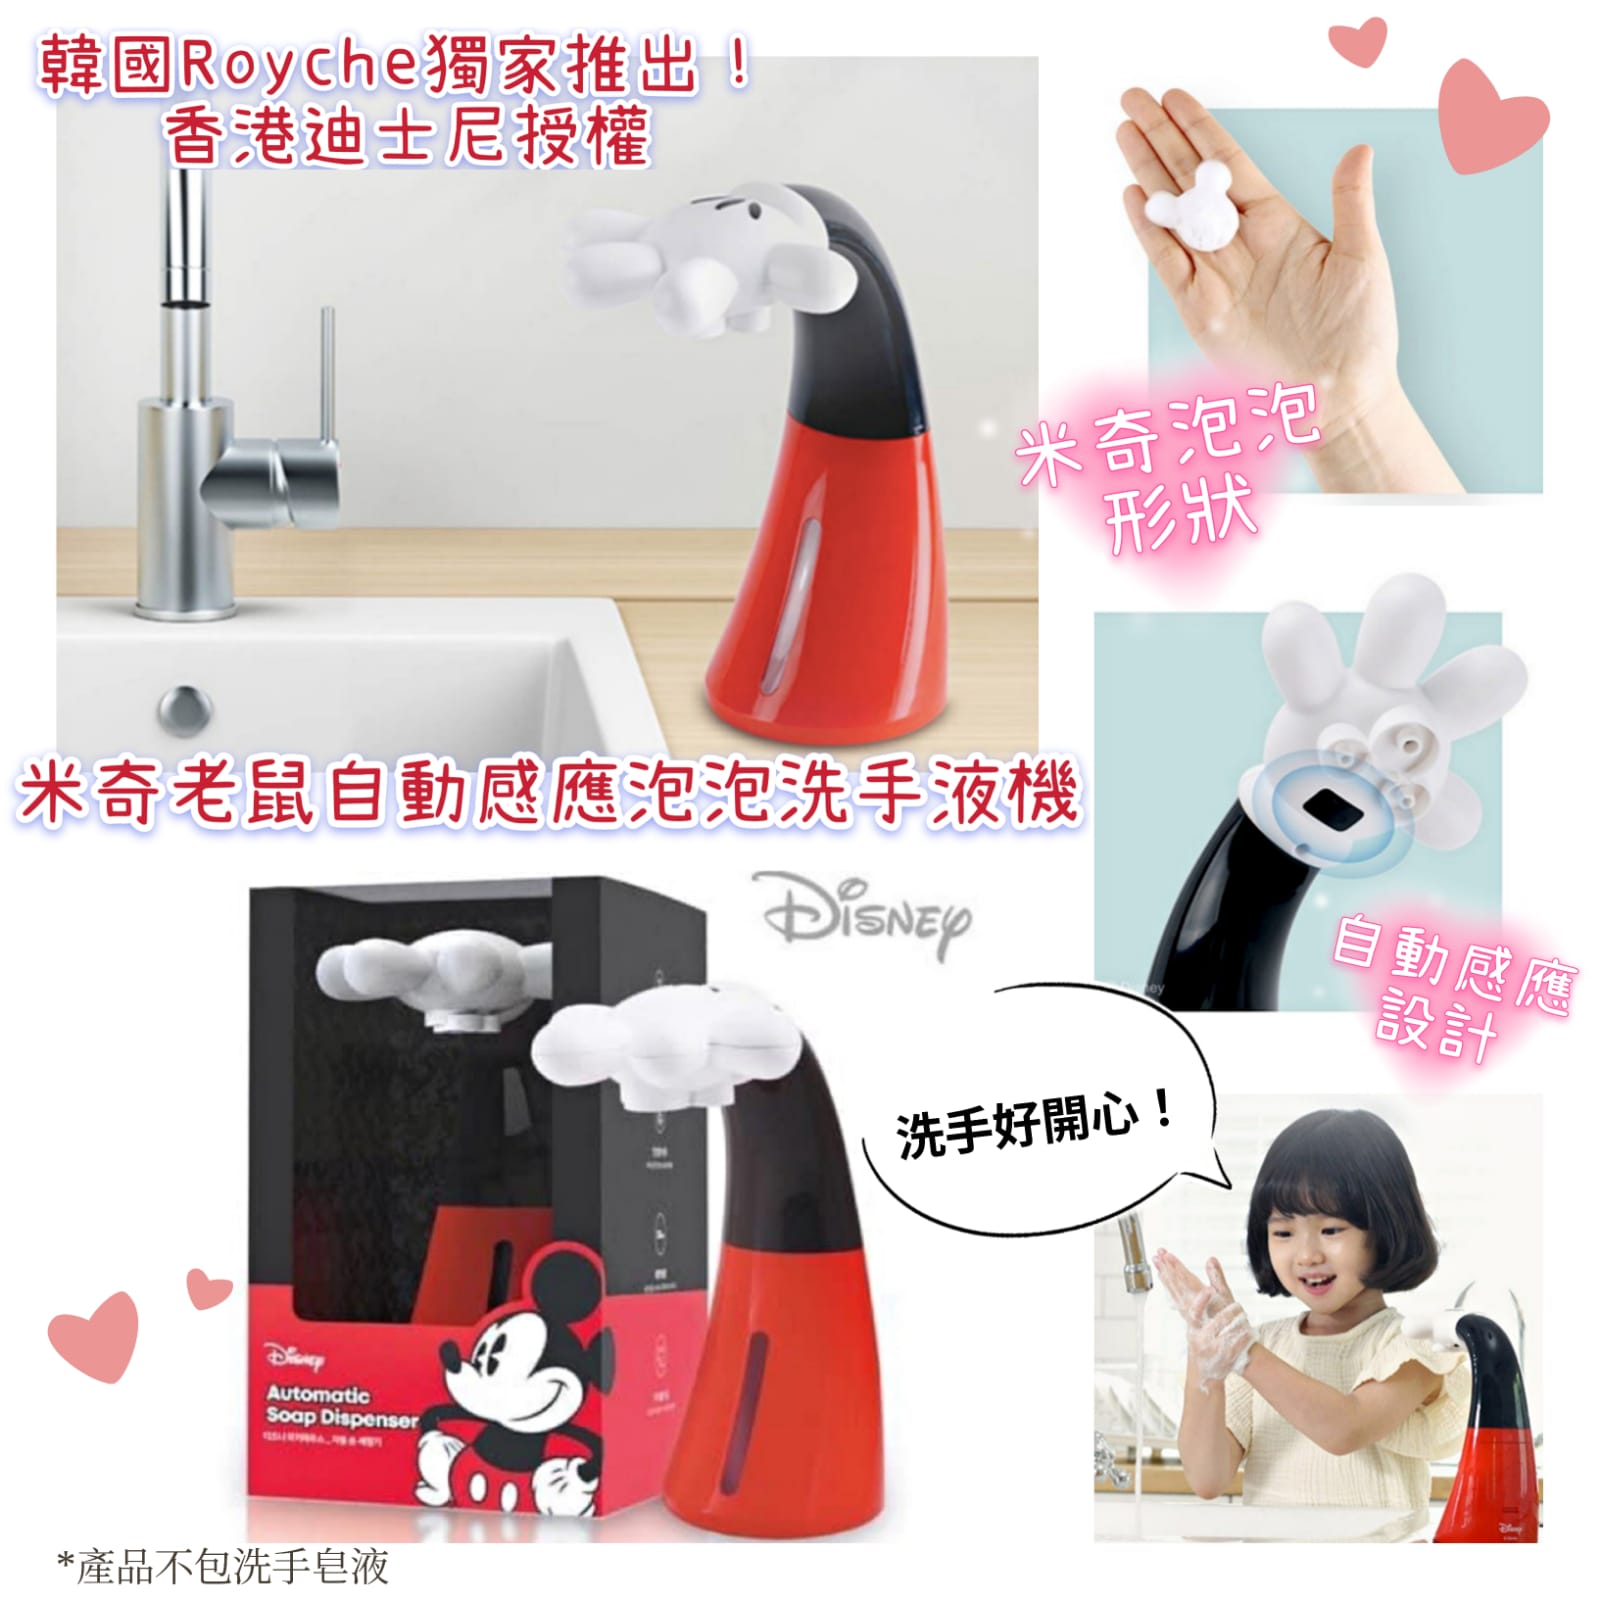 韓國Pocons獨家推出米奇自動感應泡泡洗手液機